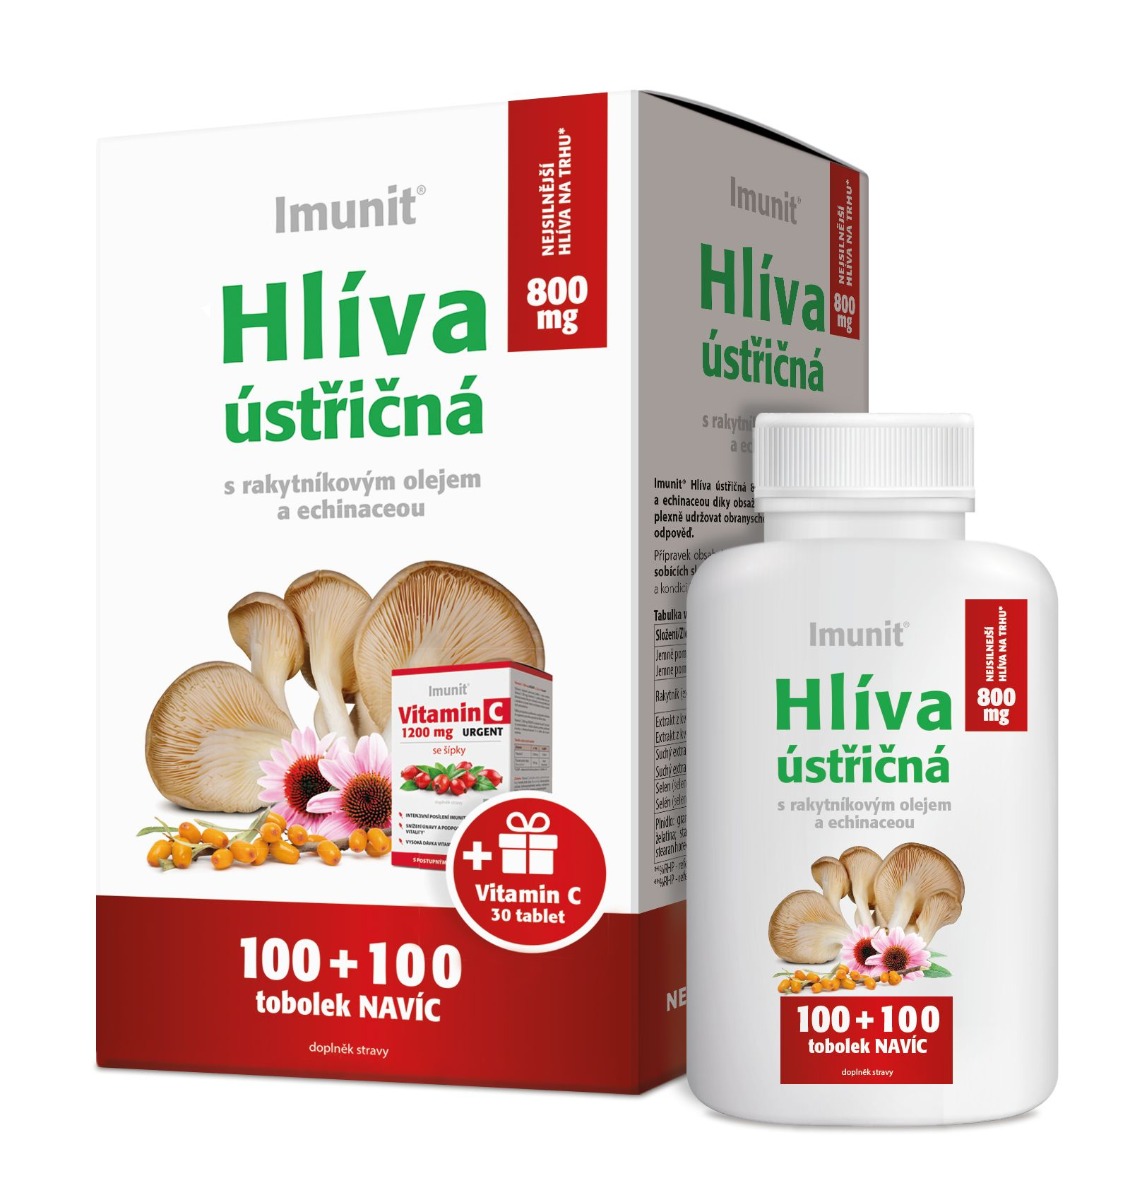 Imunit Hlíva ústřičná 800 mg s rakytníkovým olejem a echinaceou 100+100 tobolek + Vitamin C 30 tablet Imunit